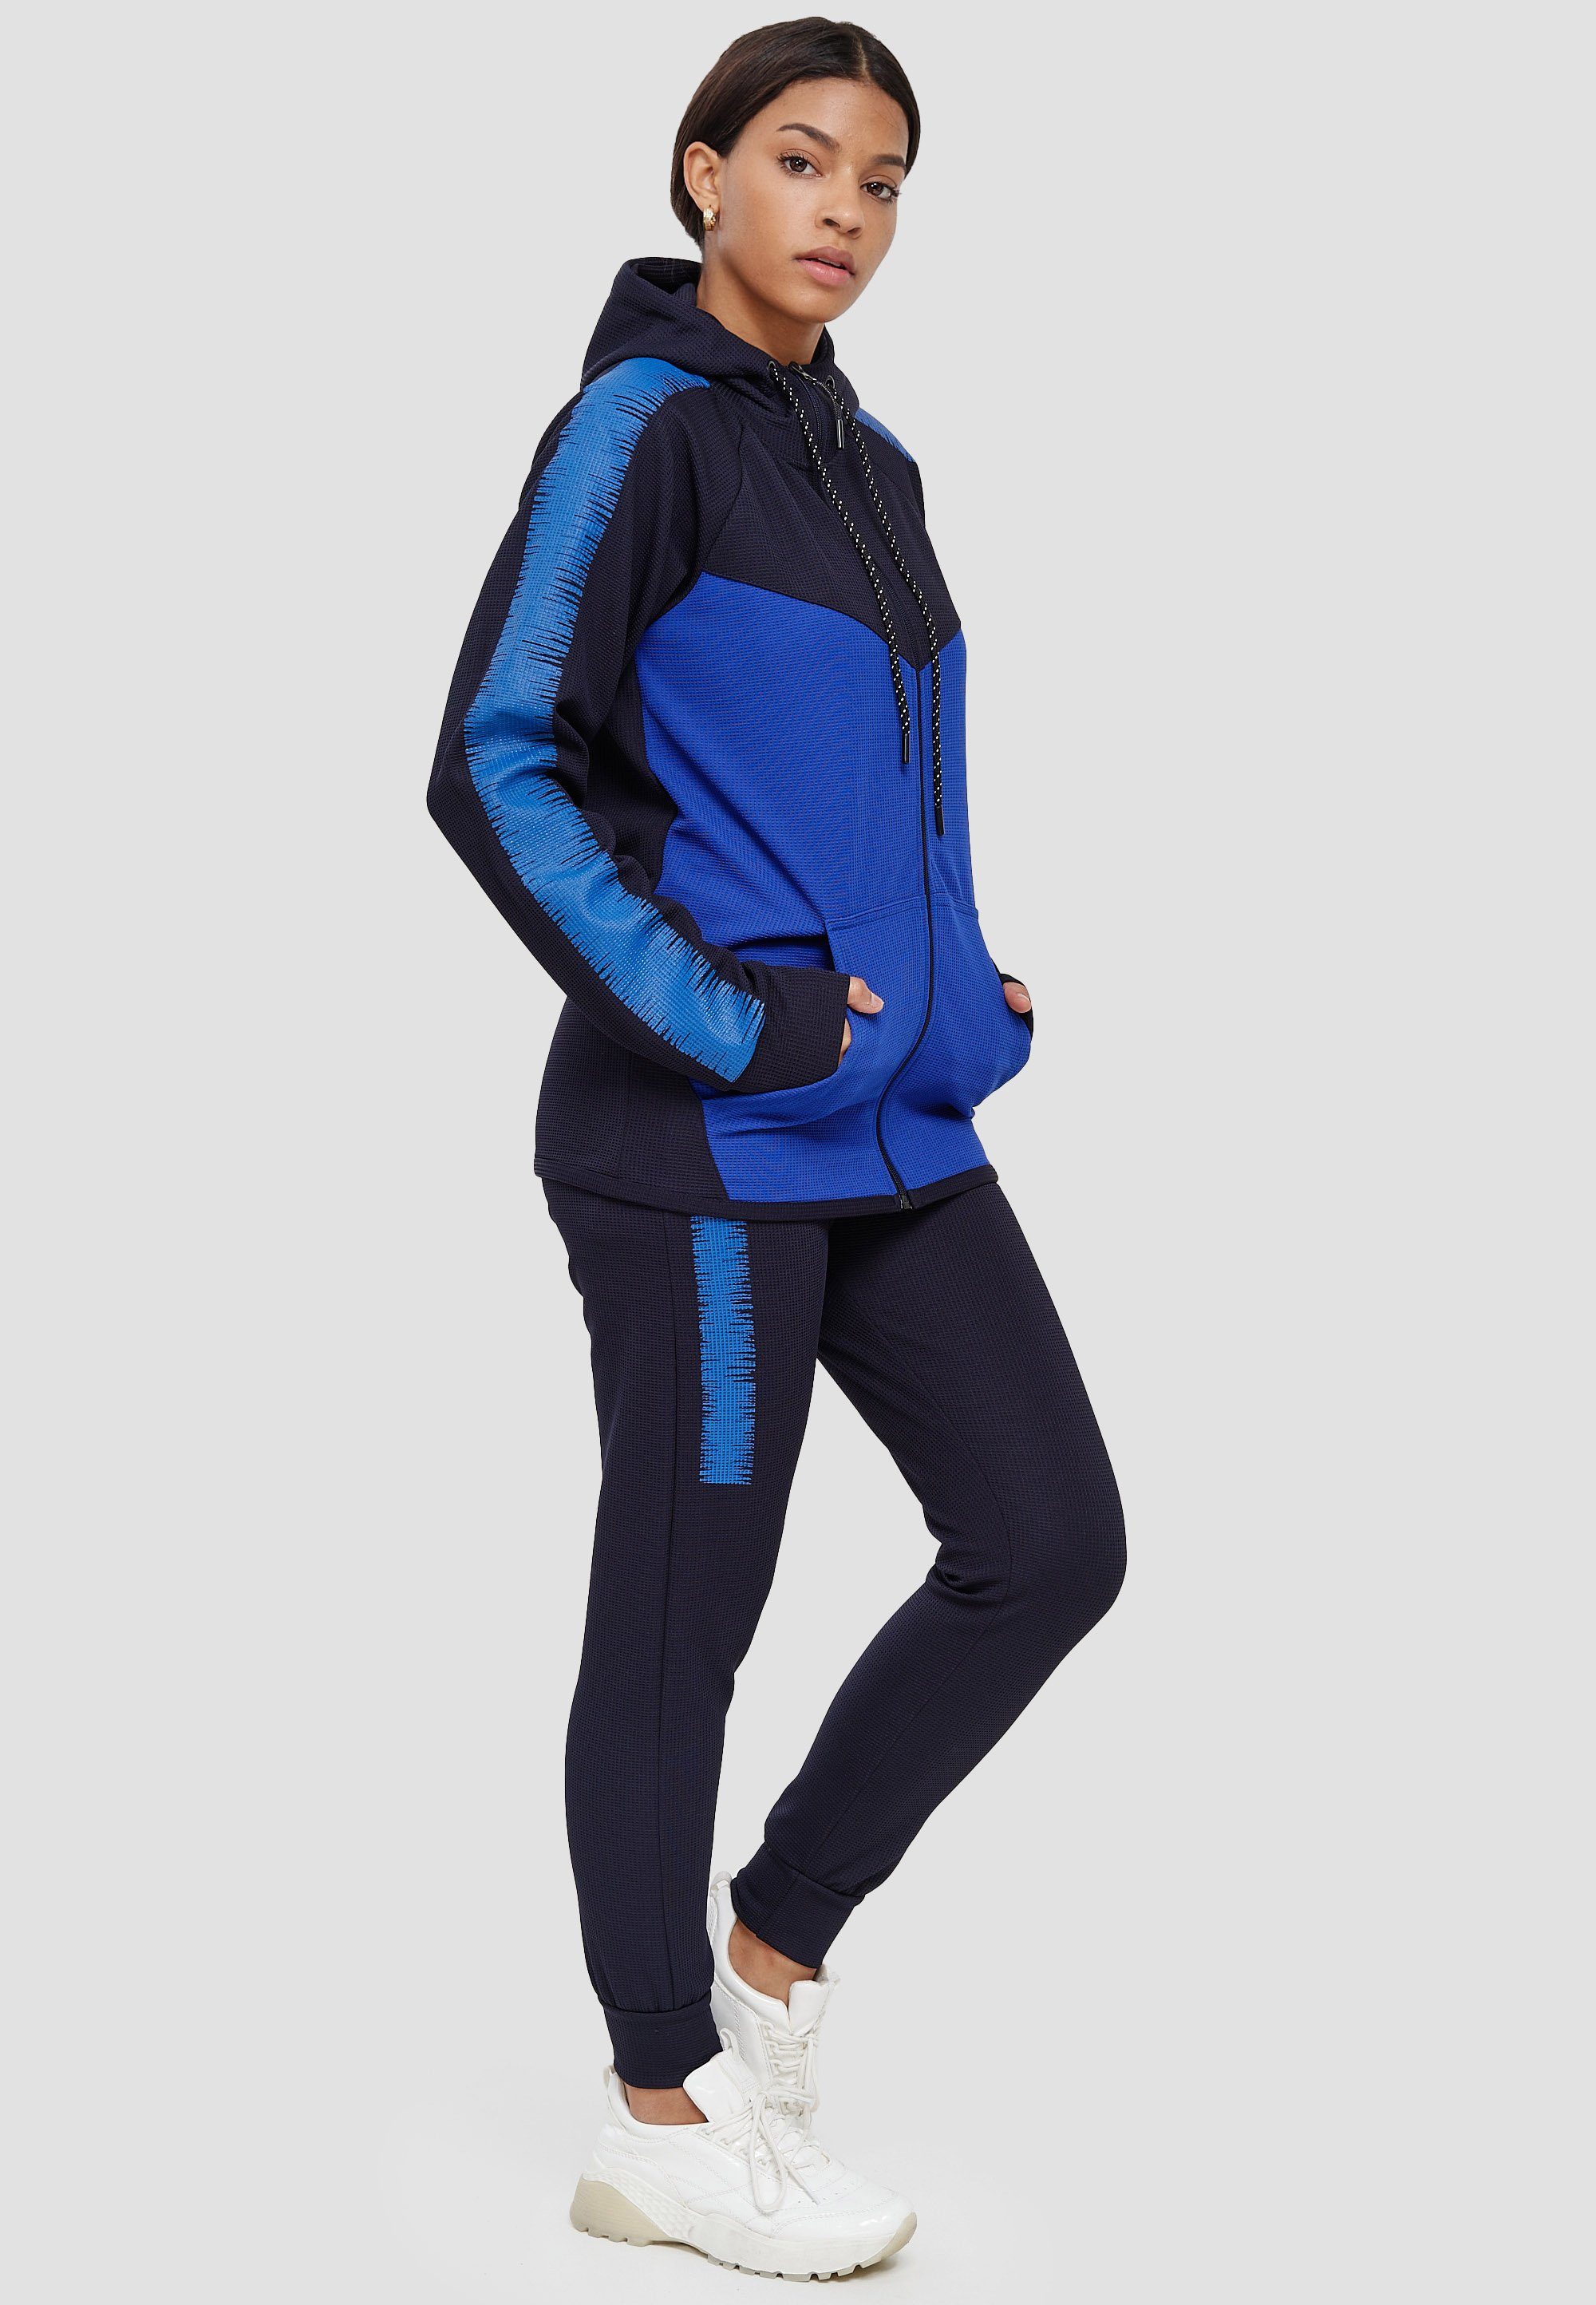 Blaue Damen Jogginganzüge online kaufen | OTTO